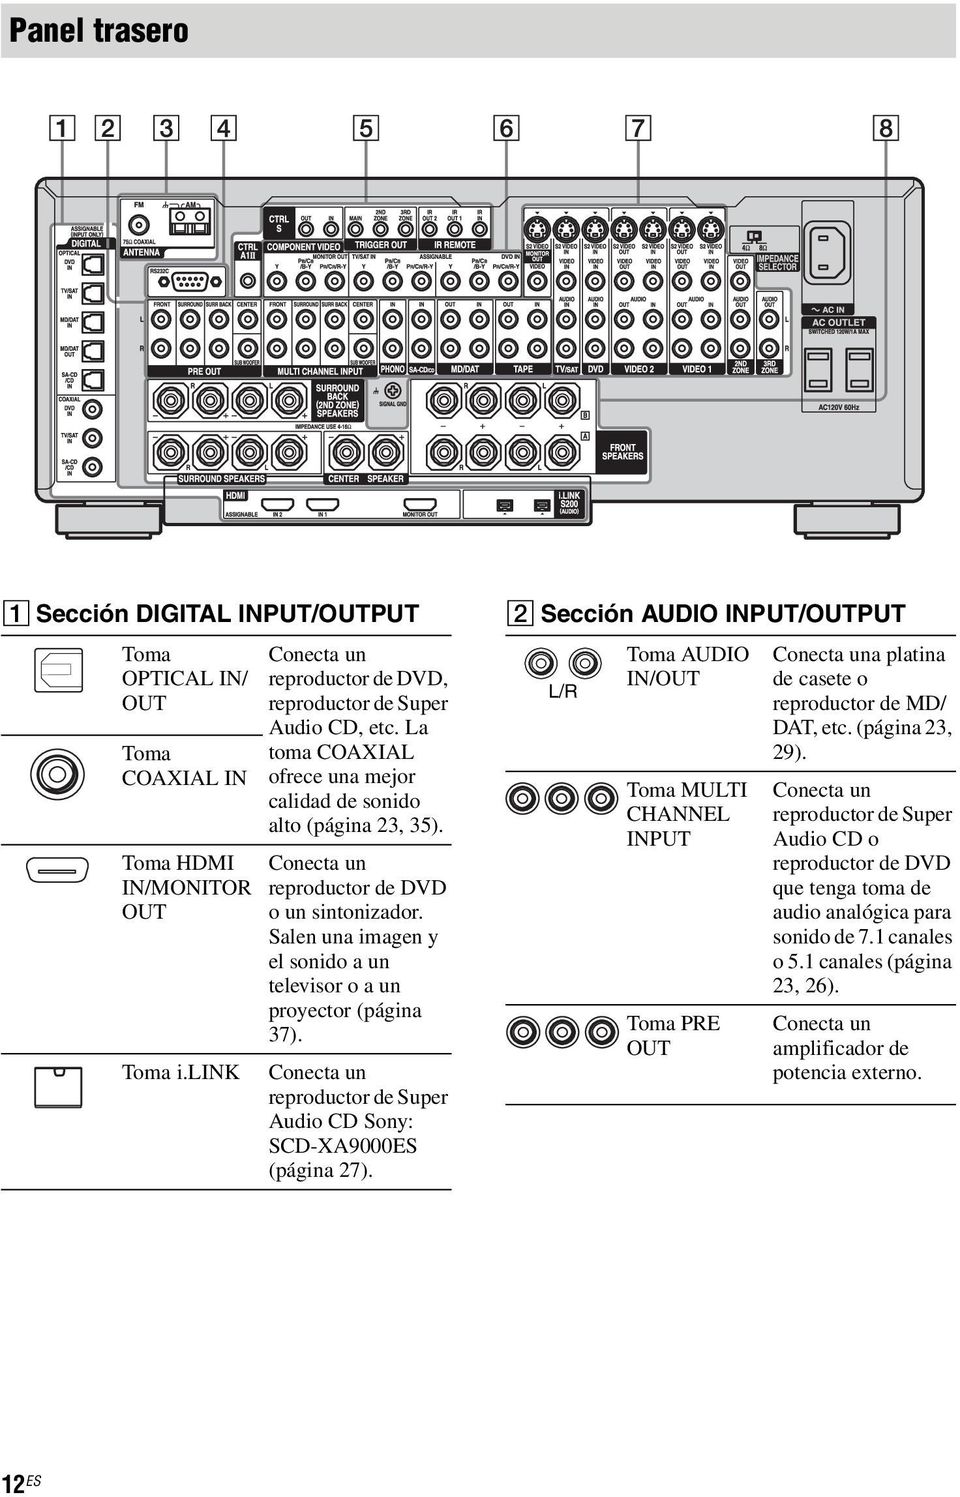 Conecta un reproductor de Super Audio CD Sony: SCD-XA9000ES (página 27).